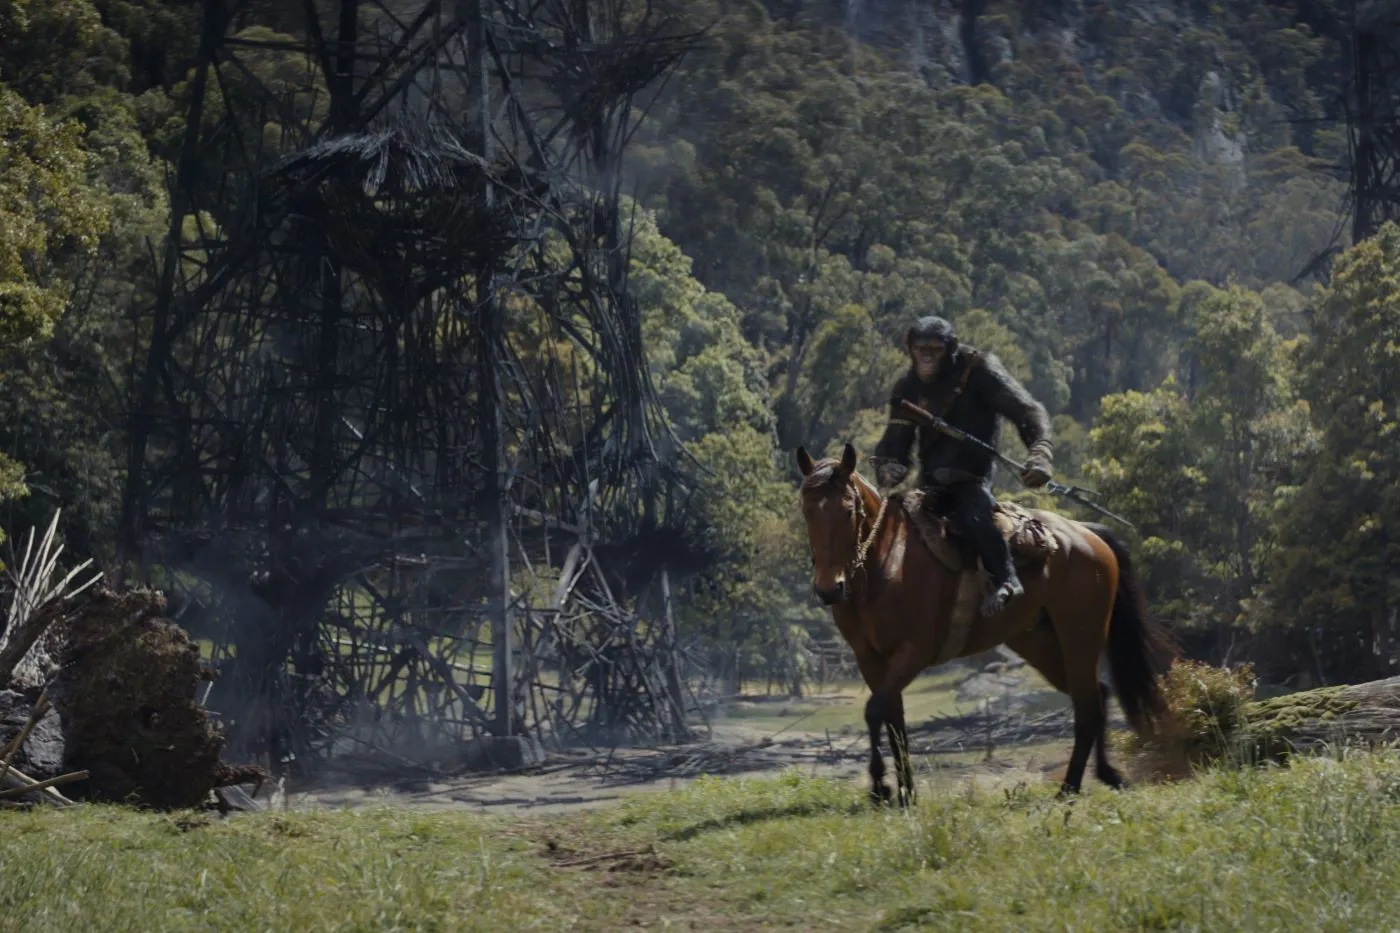 eine bewaldete Landschaft von Trümmern übersät, rechts im Bild reitet ein bewaffneter Schimpanse auf einem braunen Pferd